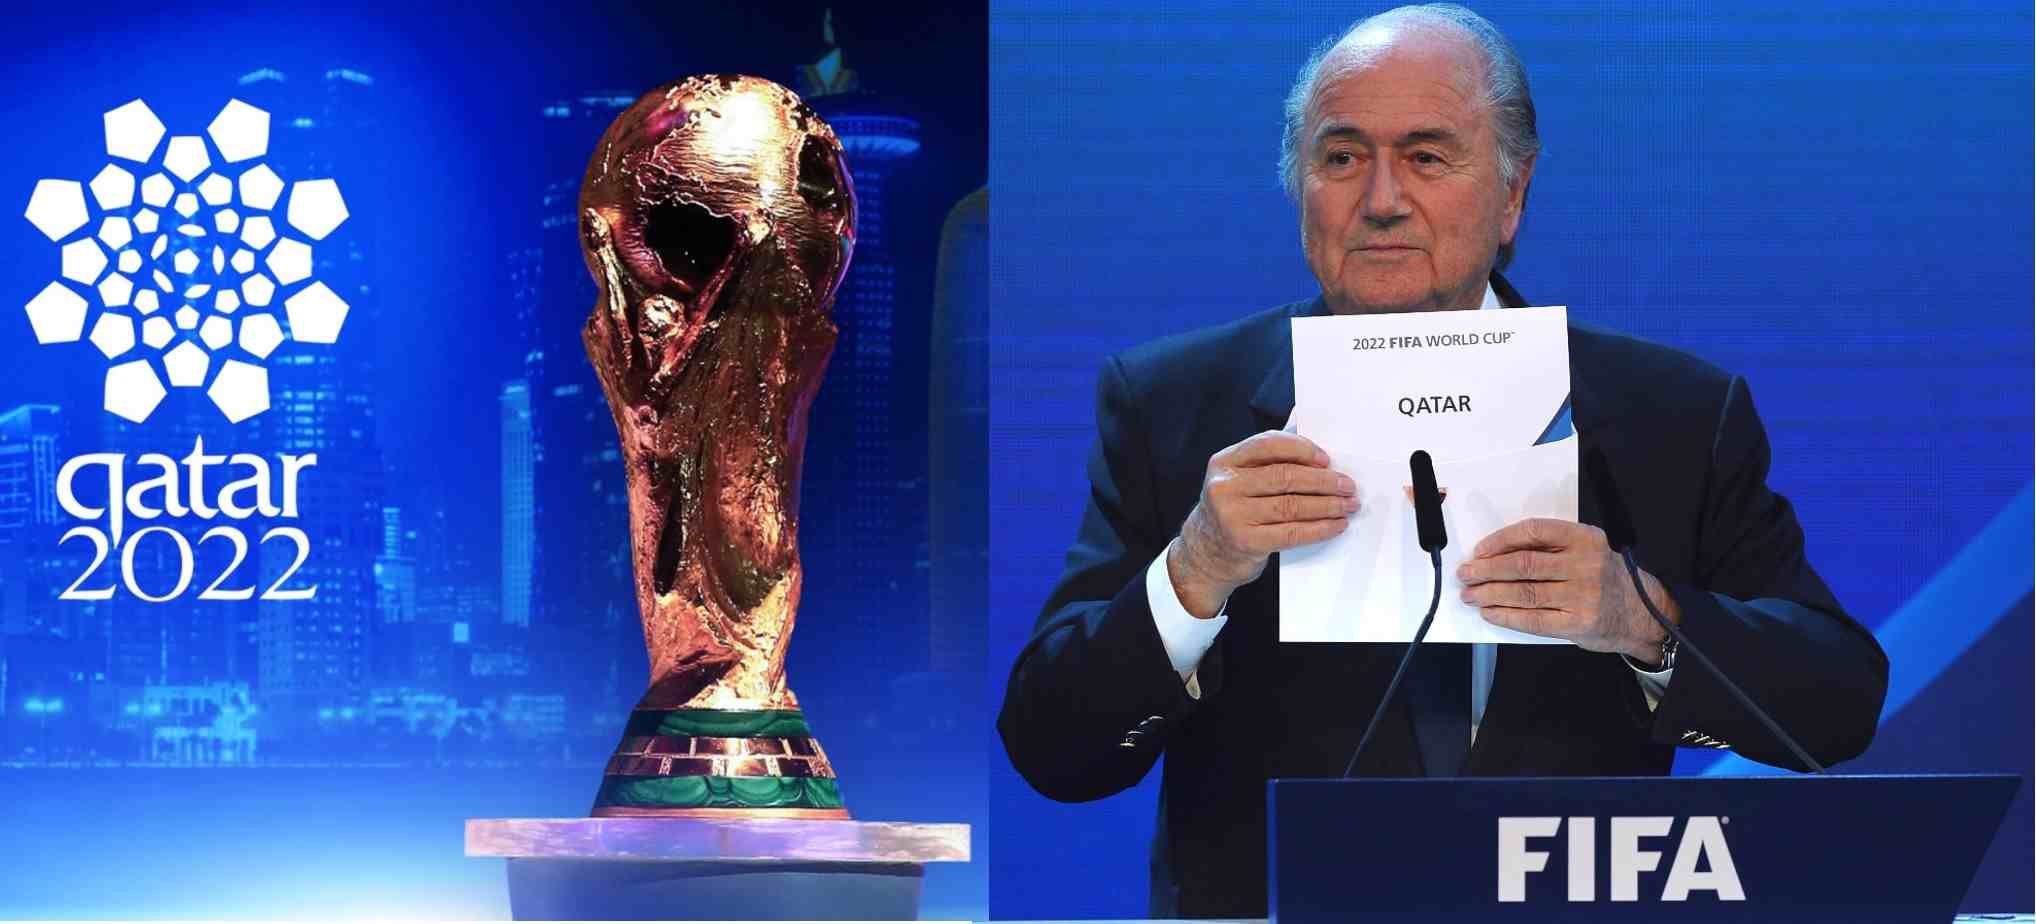 2022 FIFA World Cup Schedule Qatar